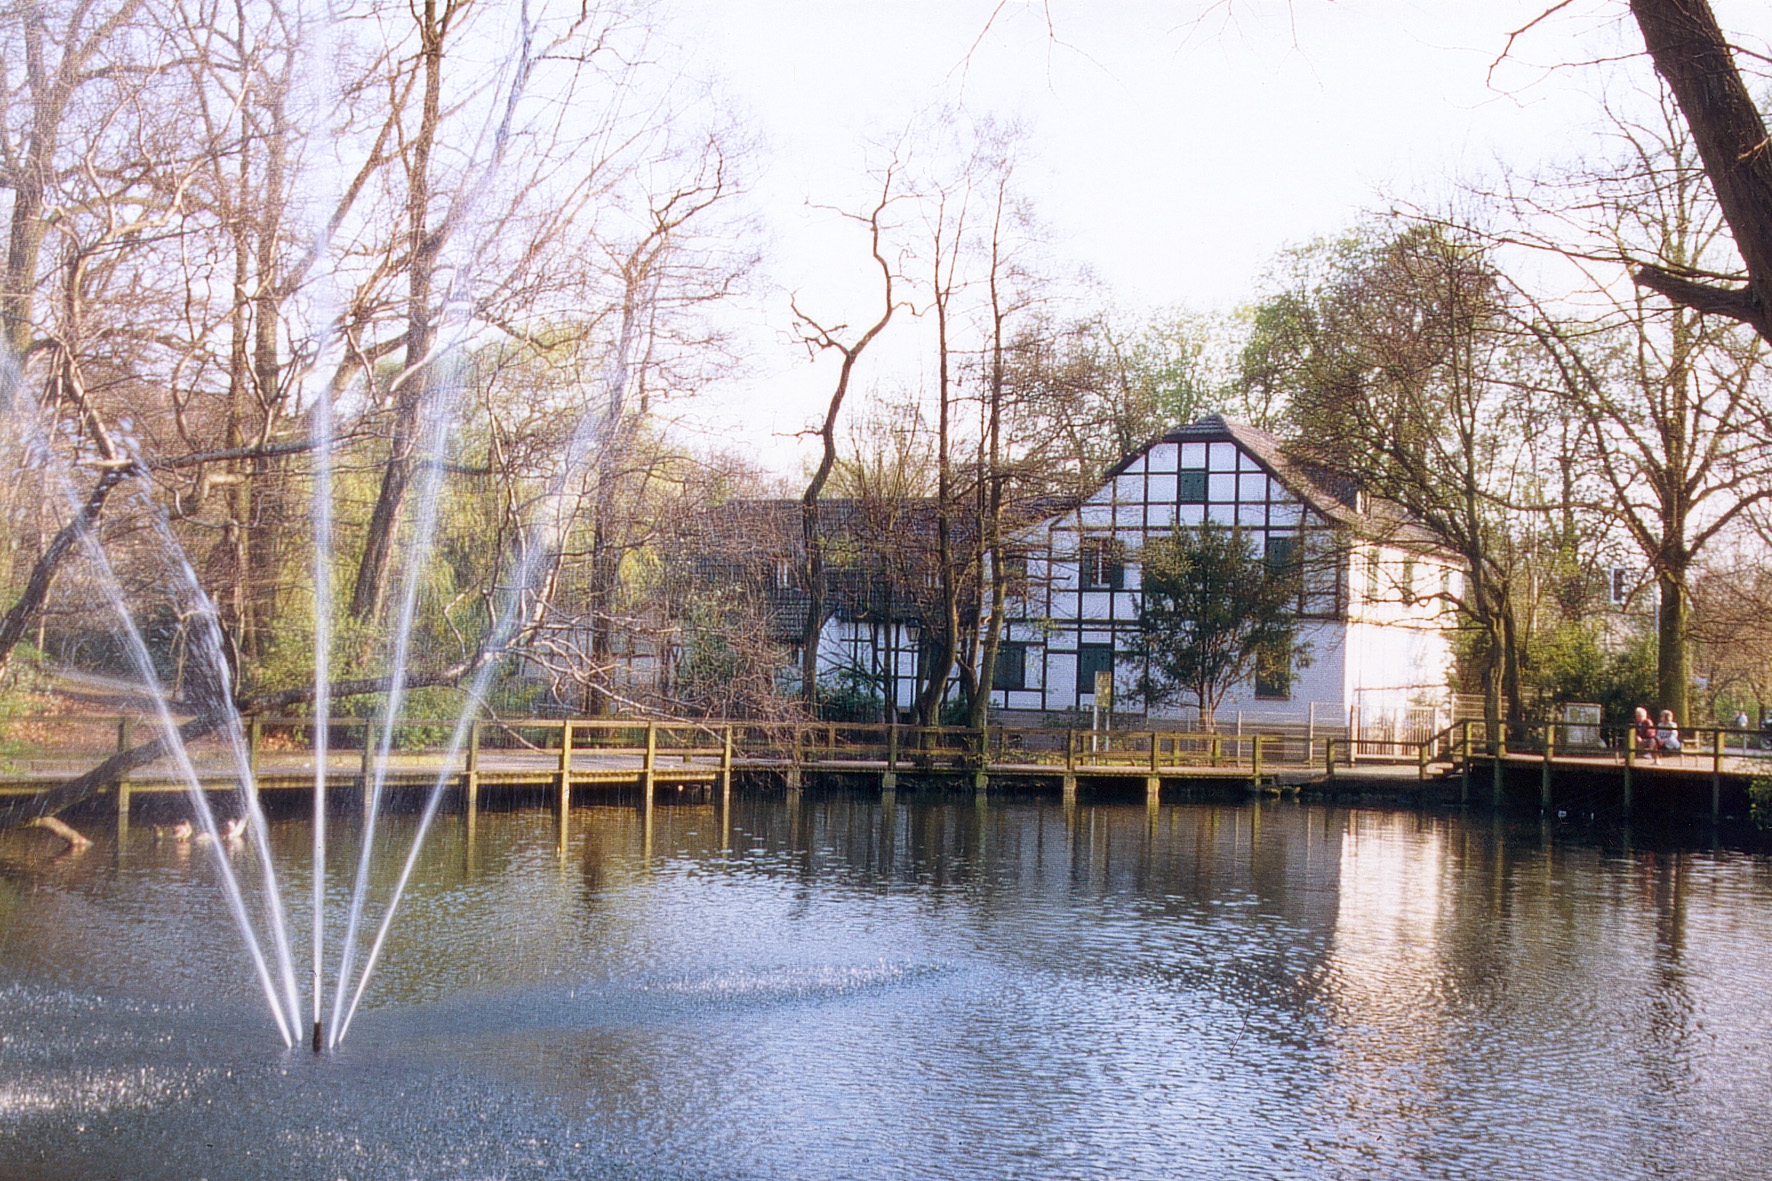 Teich mit Fontaine vor Fachwerkgebäude